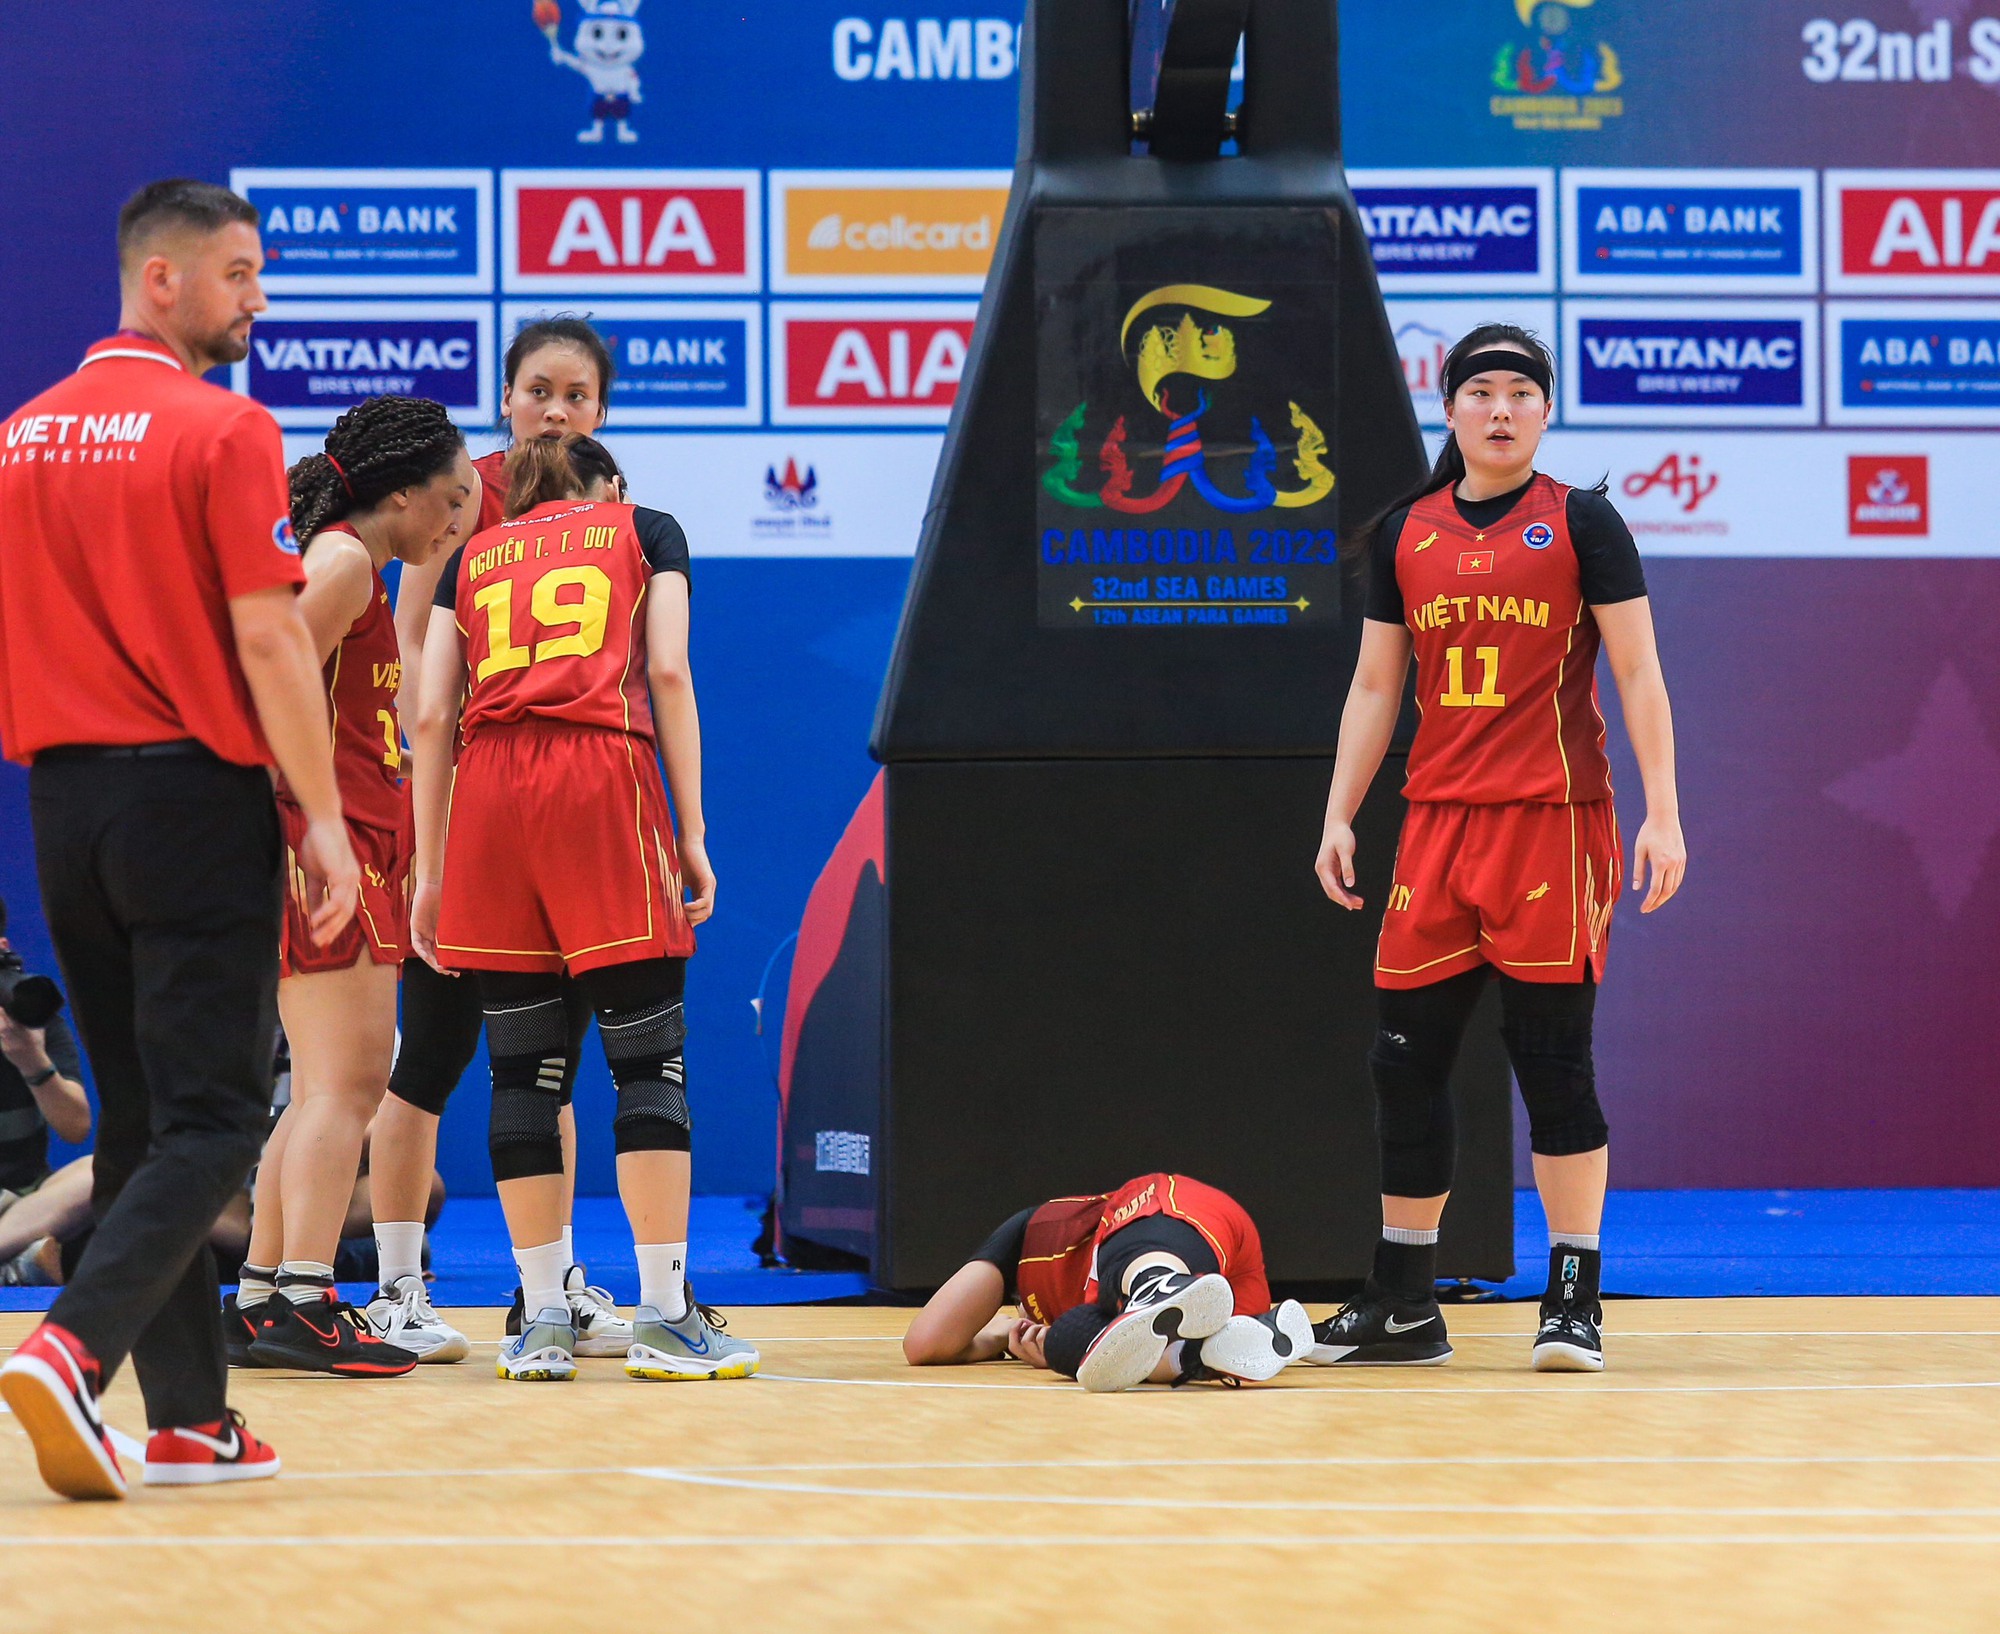 Hot girl bóng rổ Trương Thảo Vy ngã đập đầu xuống sàn vẫn xin tiếp tục thi đấu cho bóng rổ nữ Việt Nam - Ảnh 4.